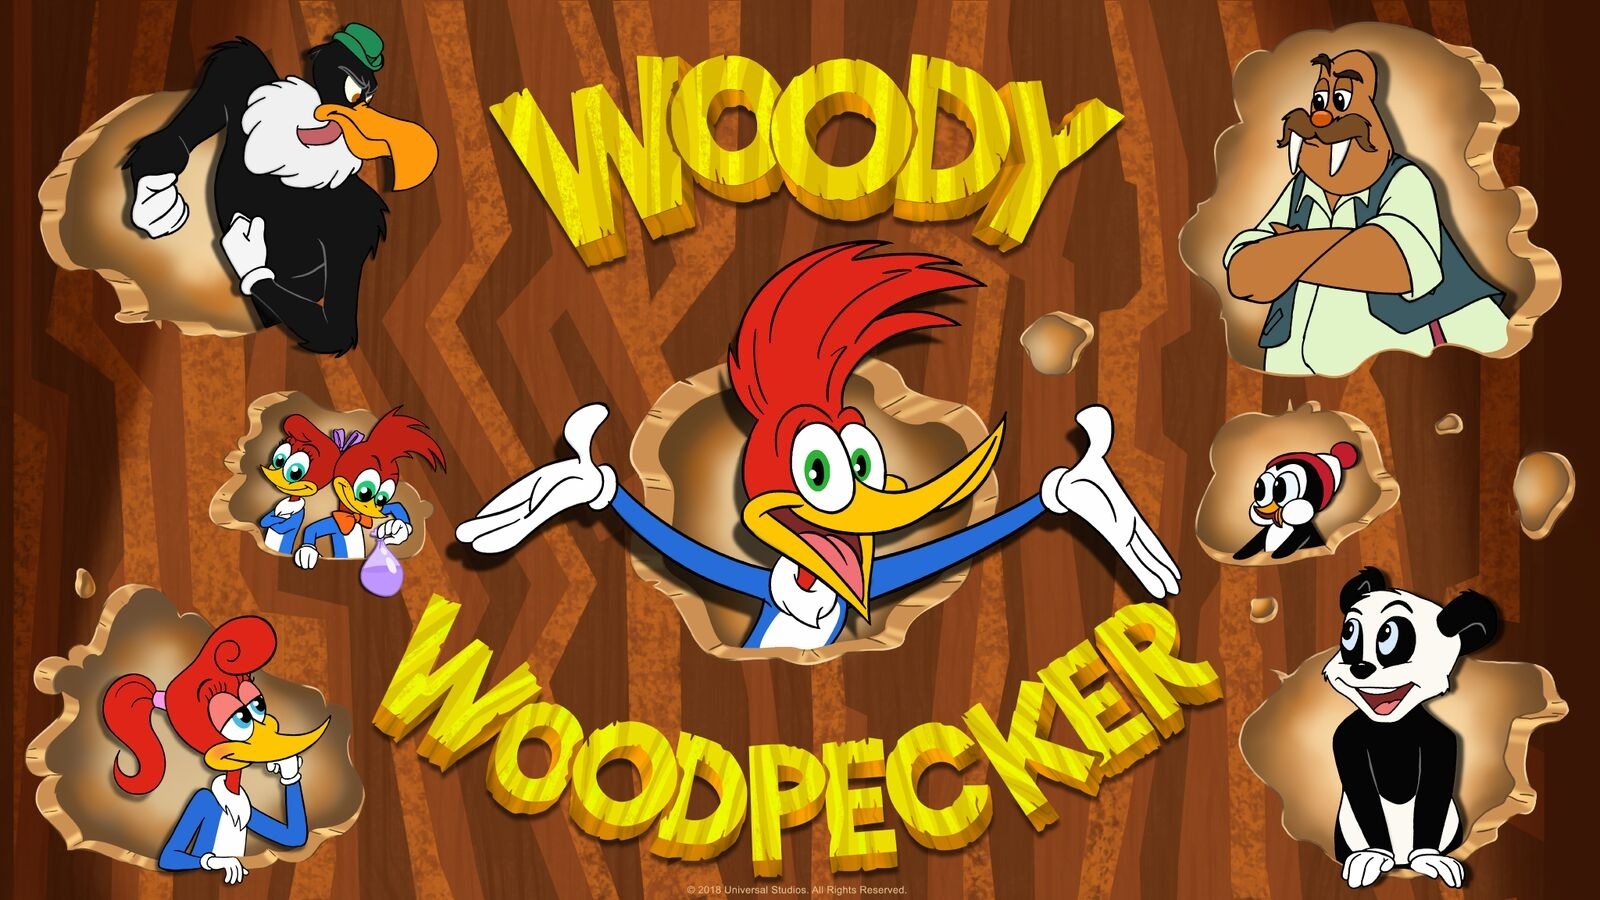 New Woody Woodpecker Show 2018 - HD Wallpaper 